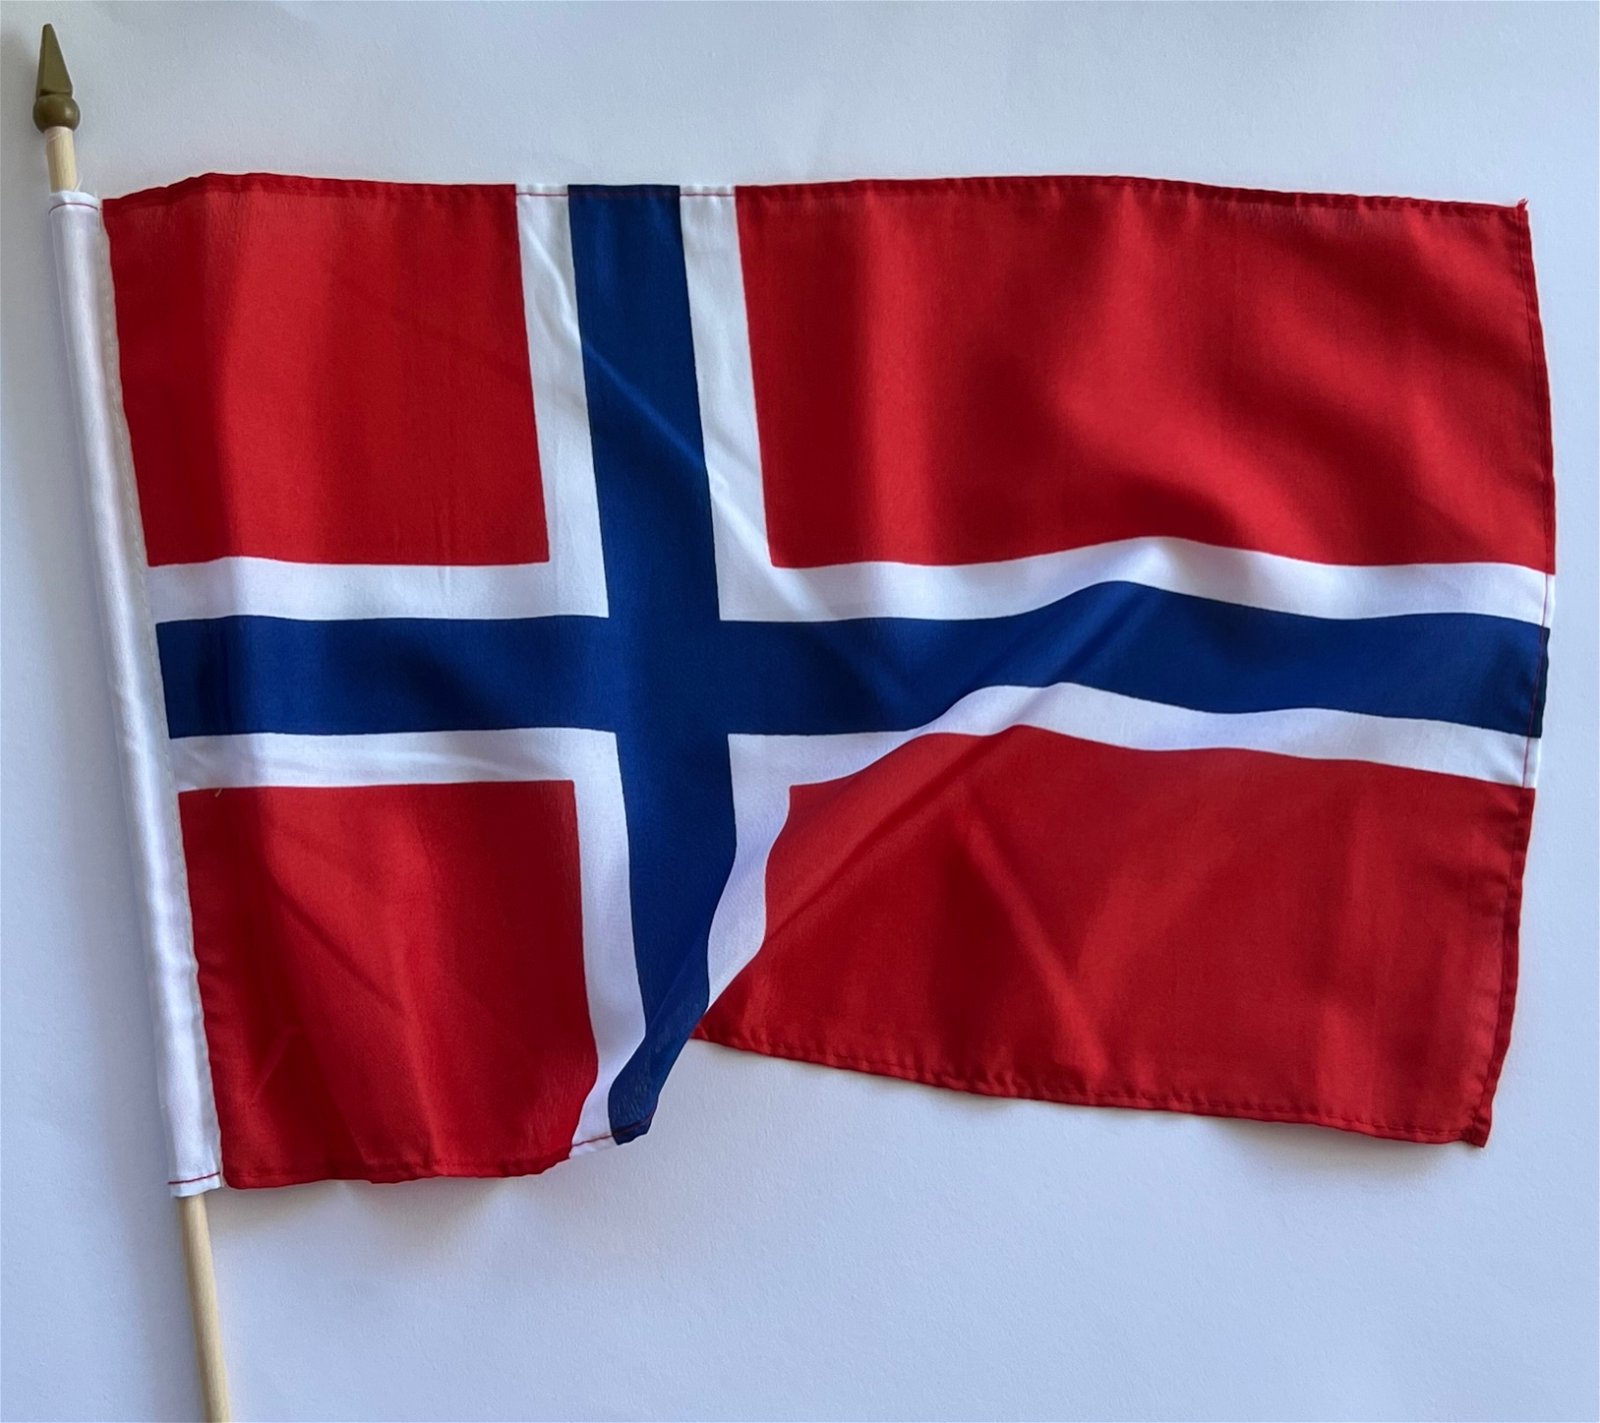 Norwegian flag on wooden stick